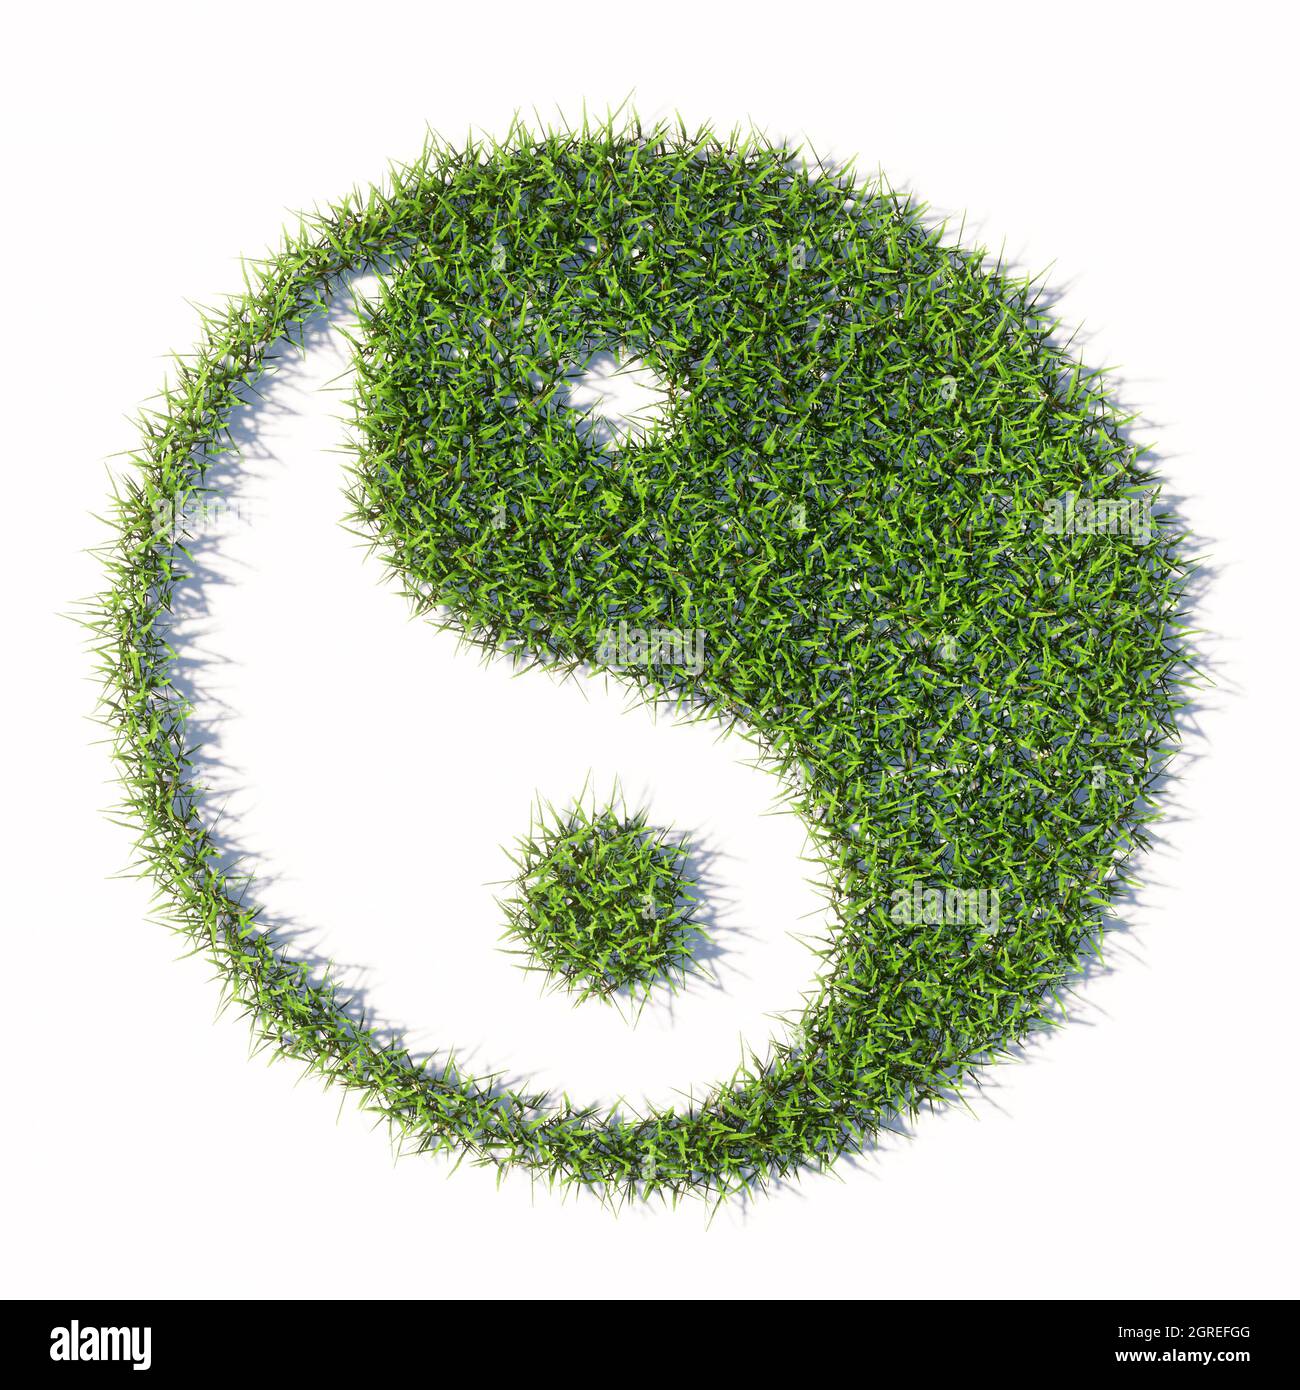 Concept ou conceptuel vert pelouse d'été herbe isolée sur fond blanc, signe du symbole chinois de Yin-Yang, opposé et complémentaire. Banque D'Images